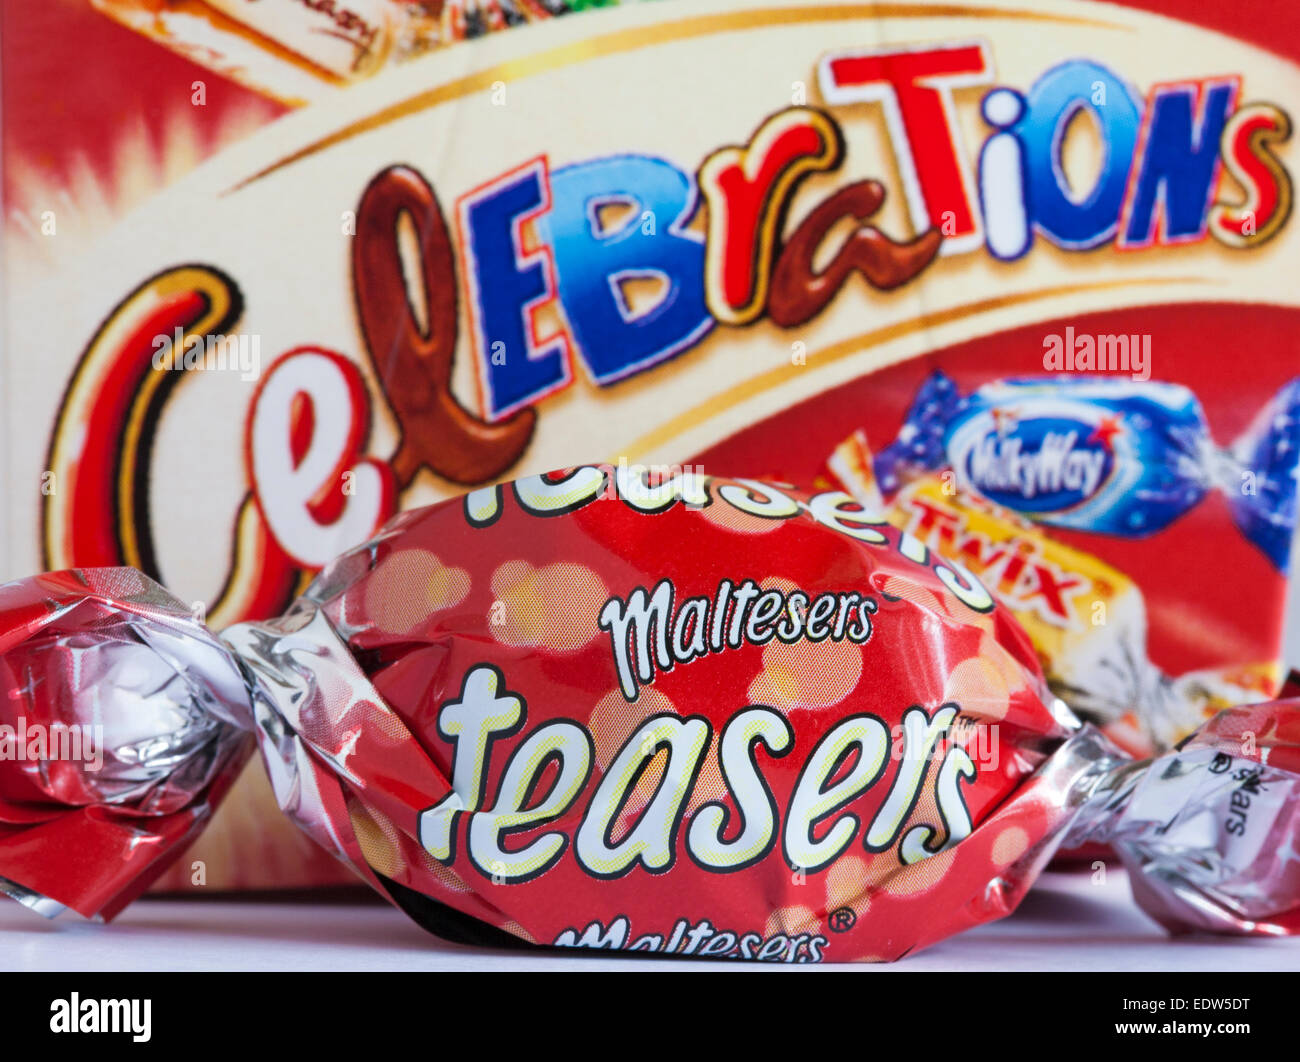 Teasers Maltesers retiré de chocolat boite de chocolats Célébrations Banque D'Images